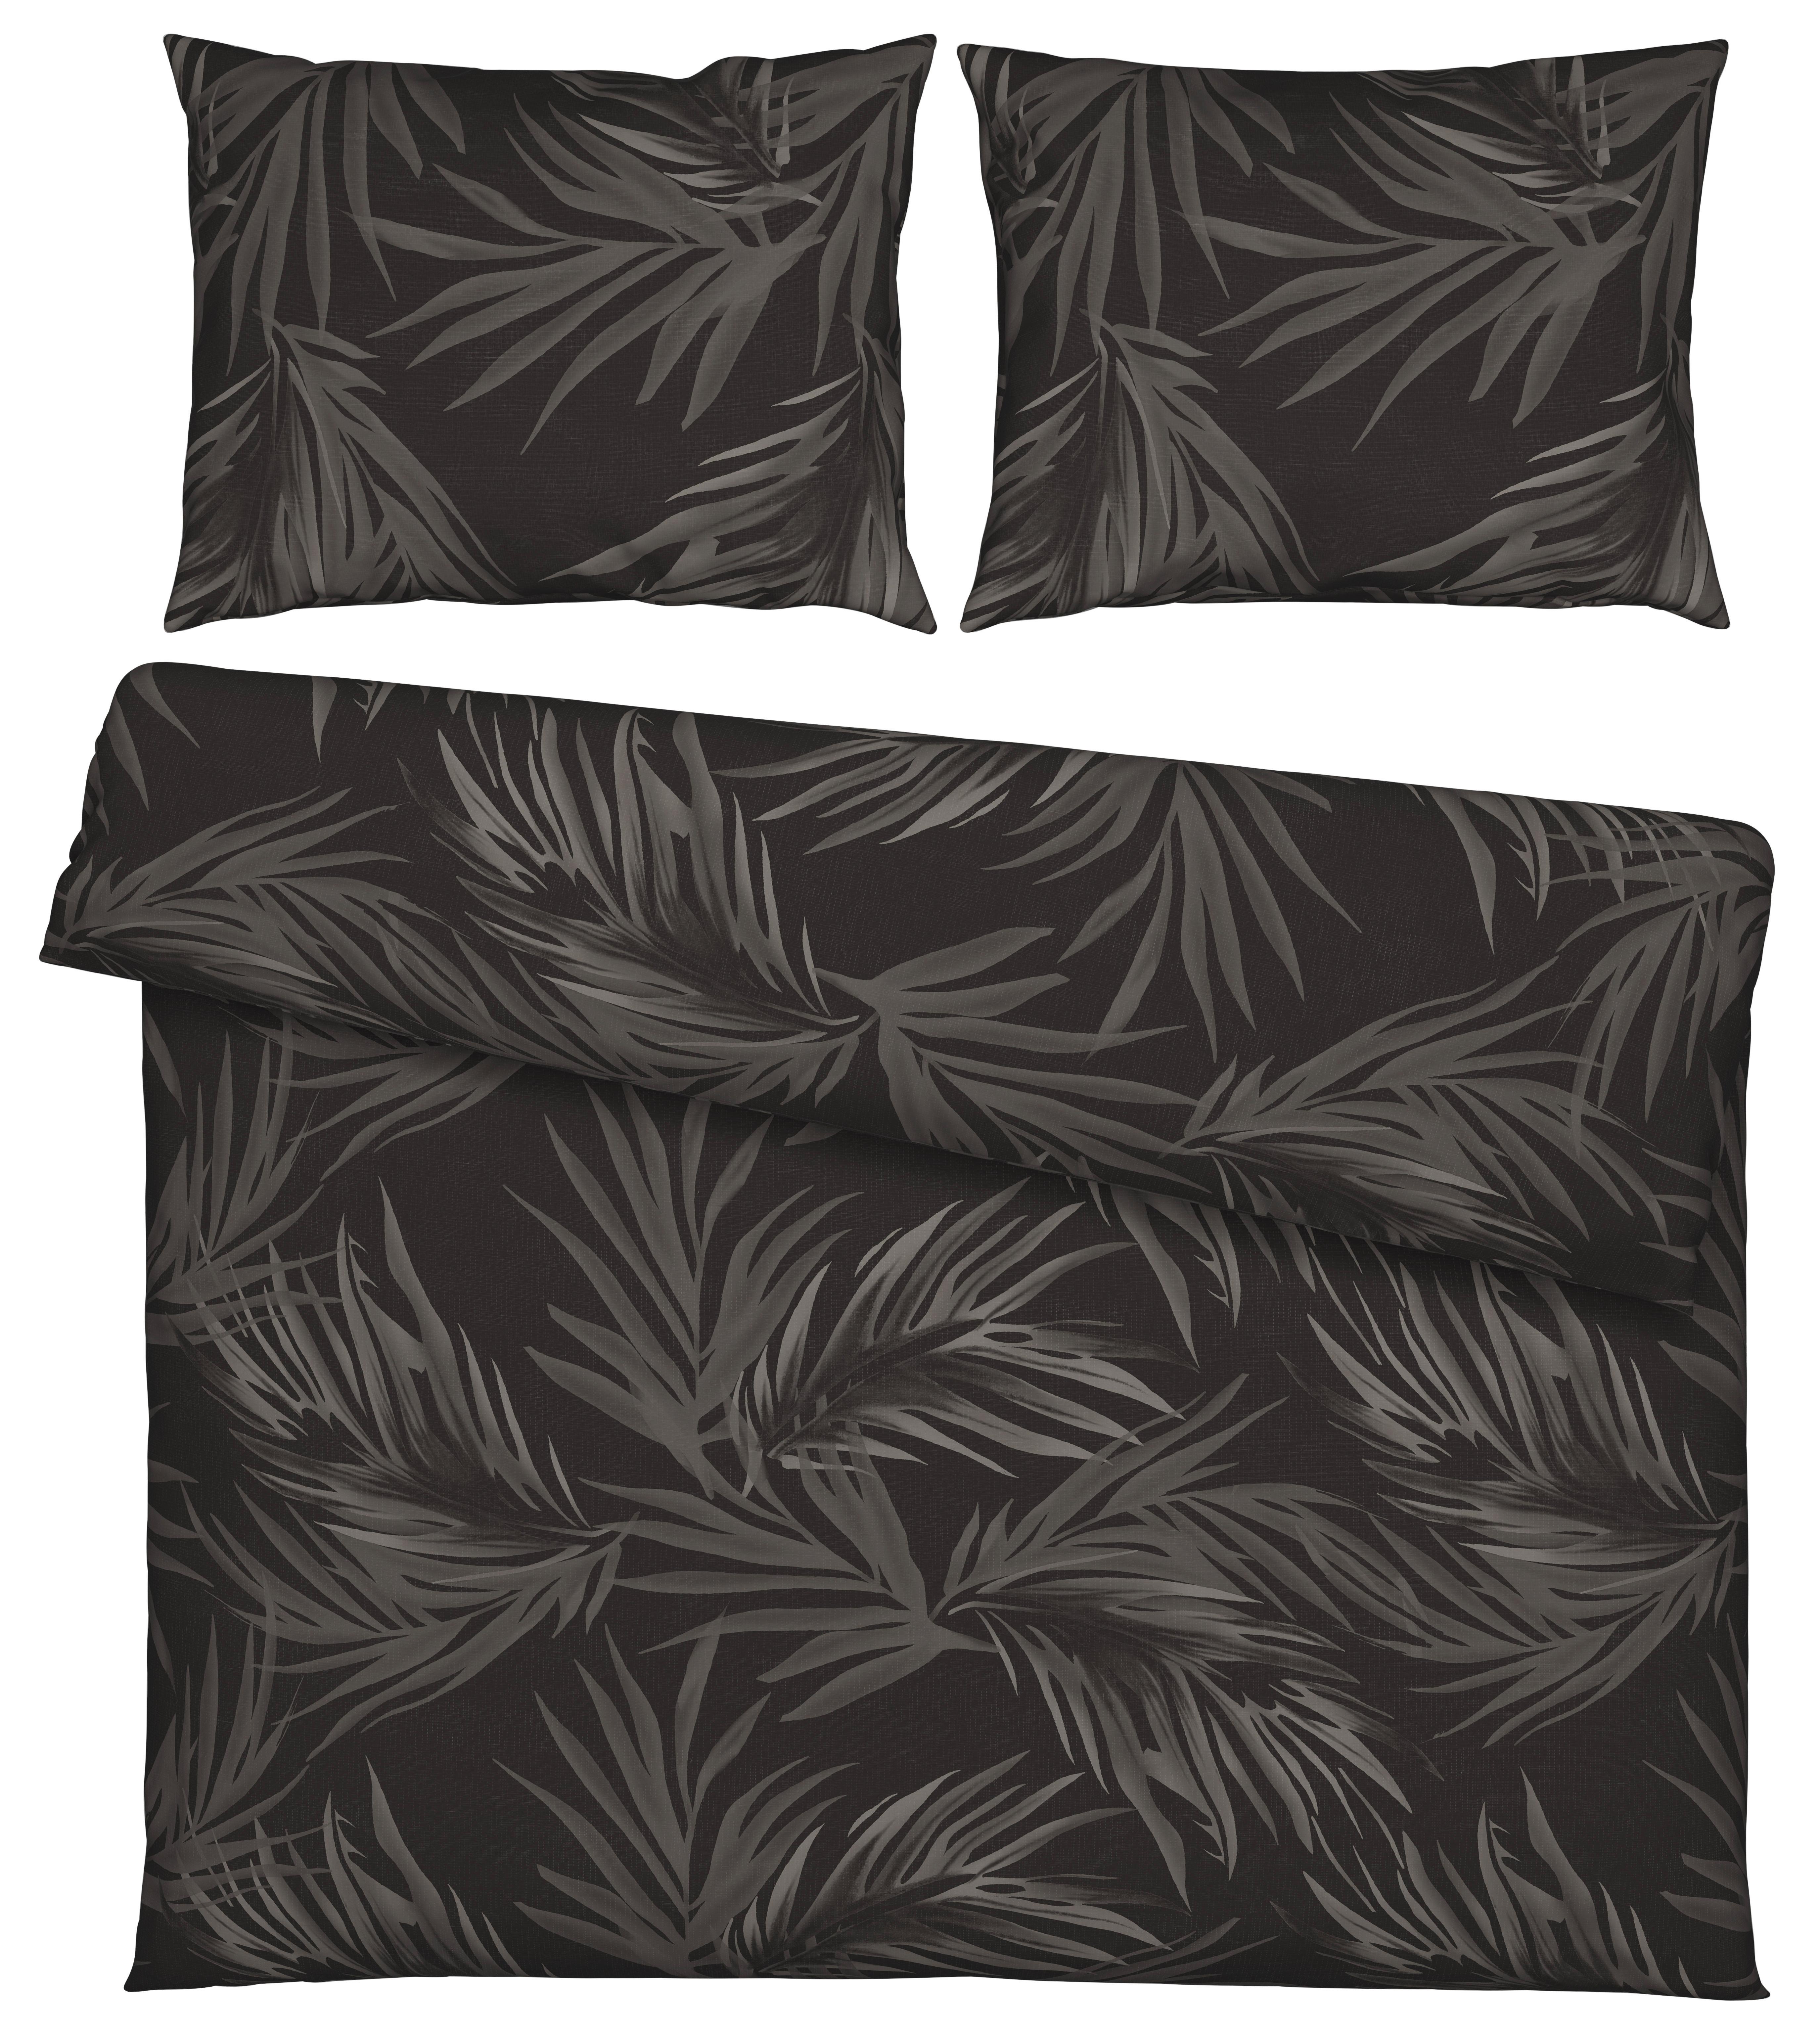 Lenjerie de pat Mila XXL - antracit/negru, Lifestyle, textil (200/220cm) - Modern Living